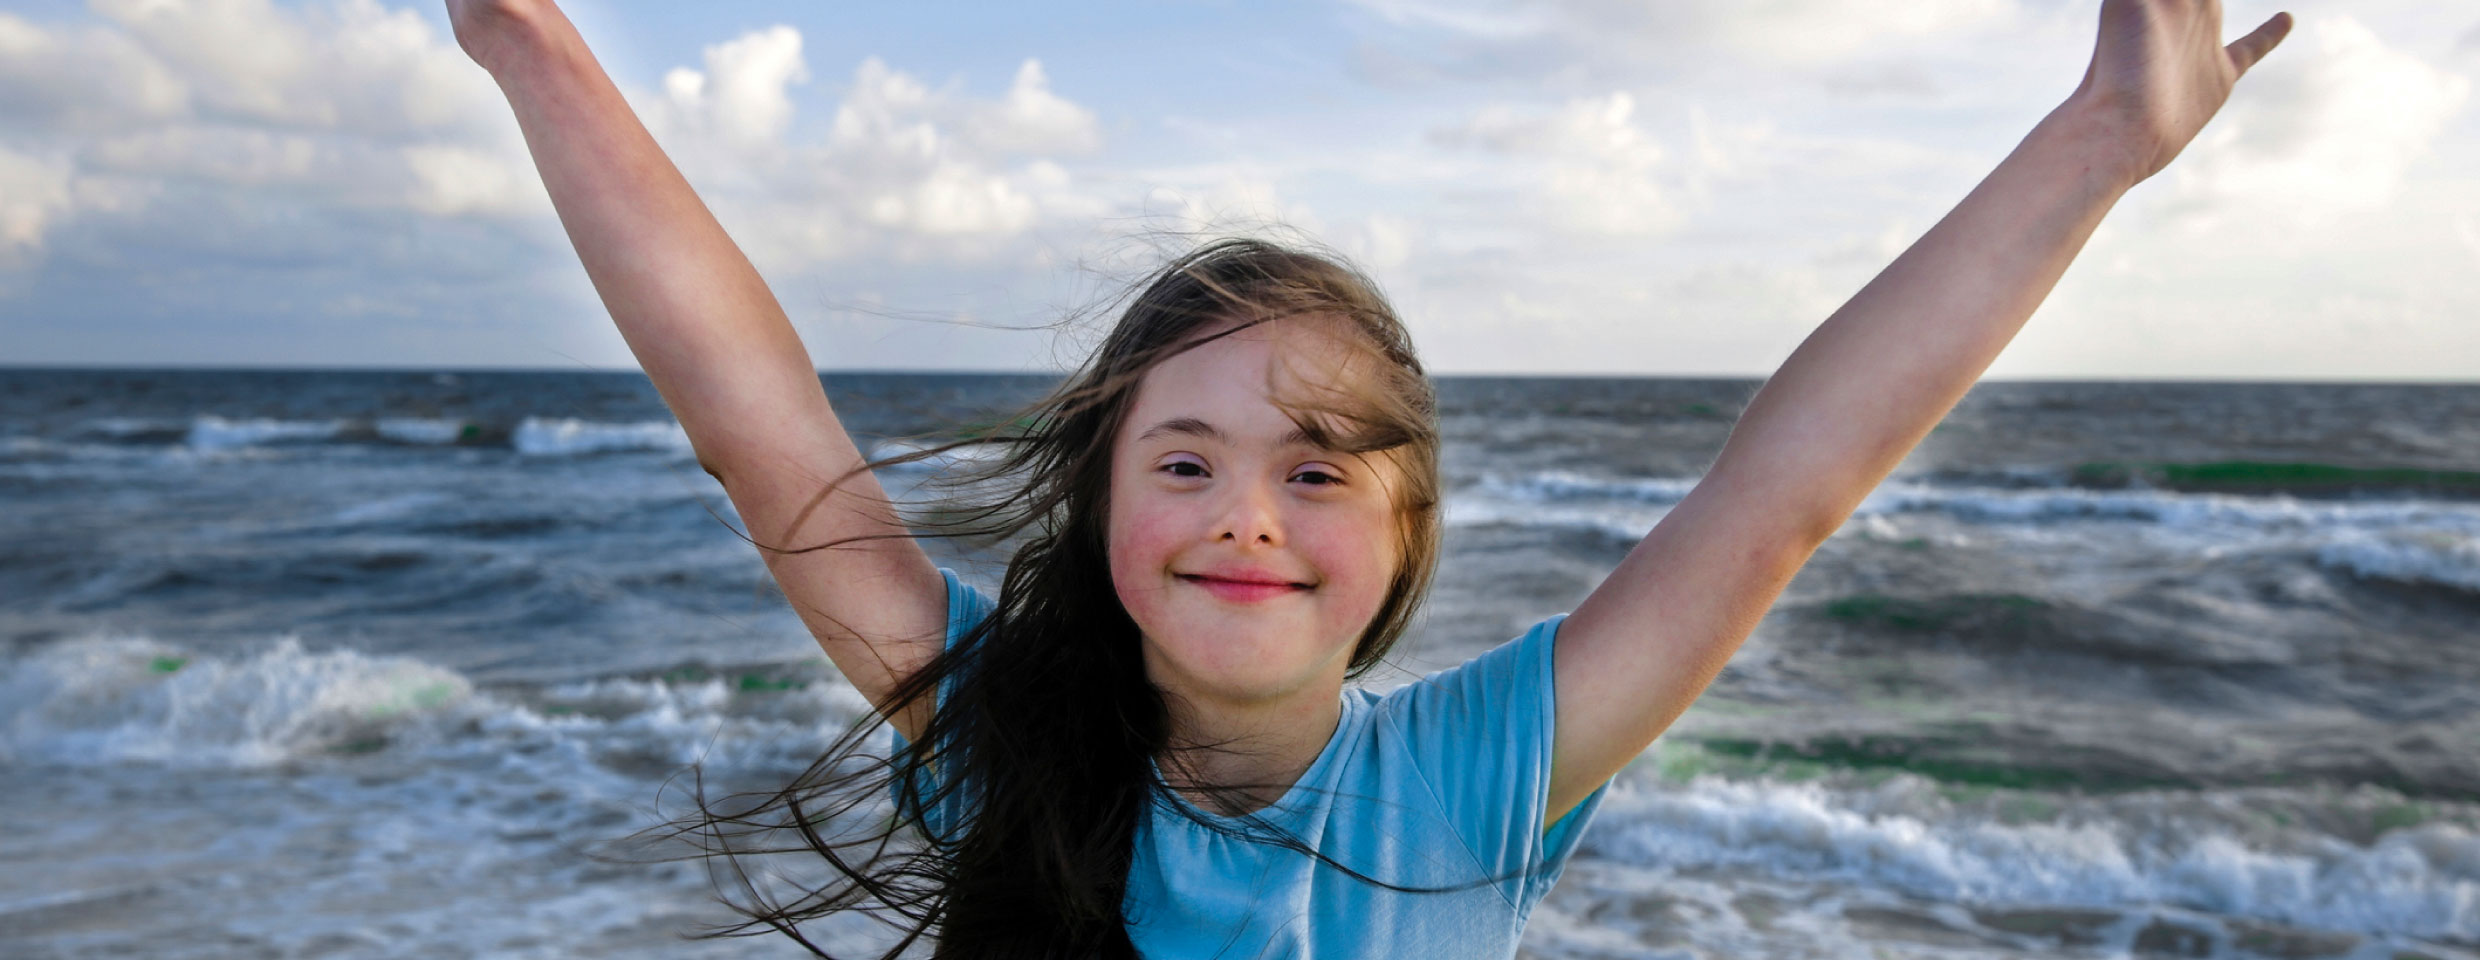 Una joven con los brazos levantados en la playa, sonriendo